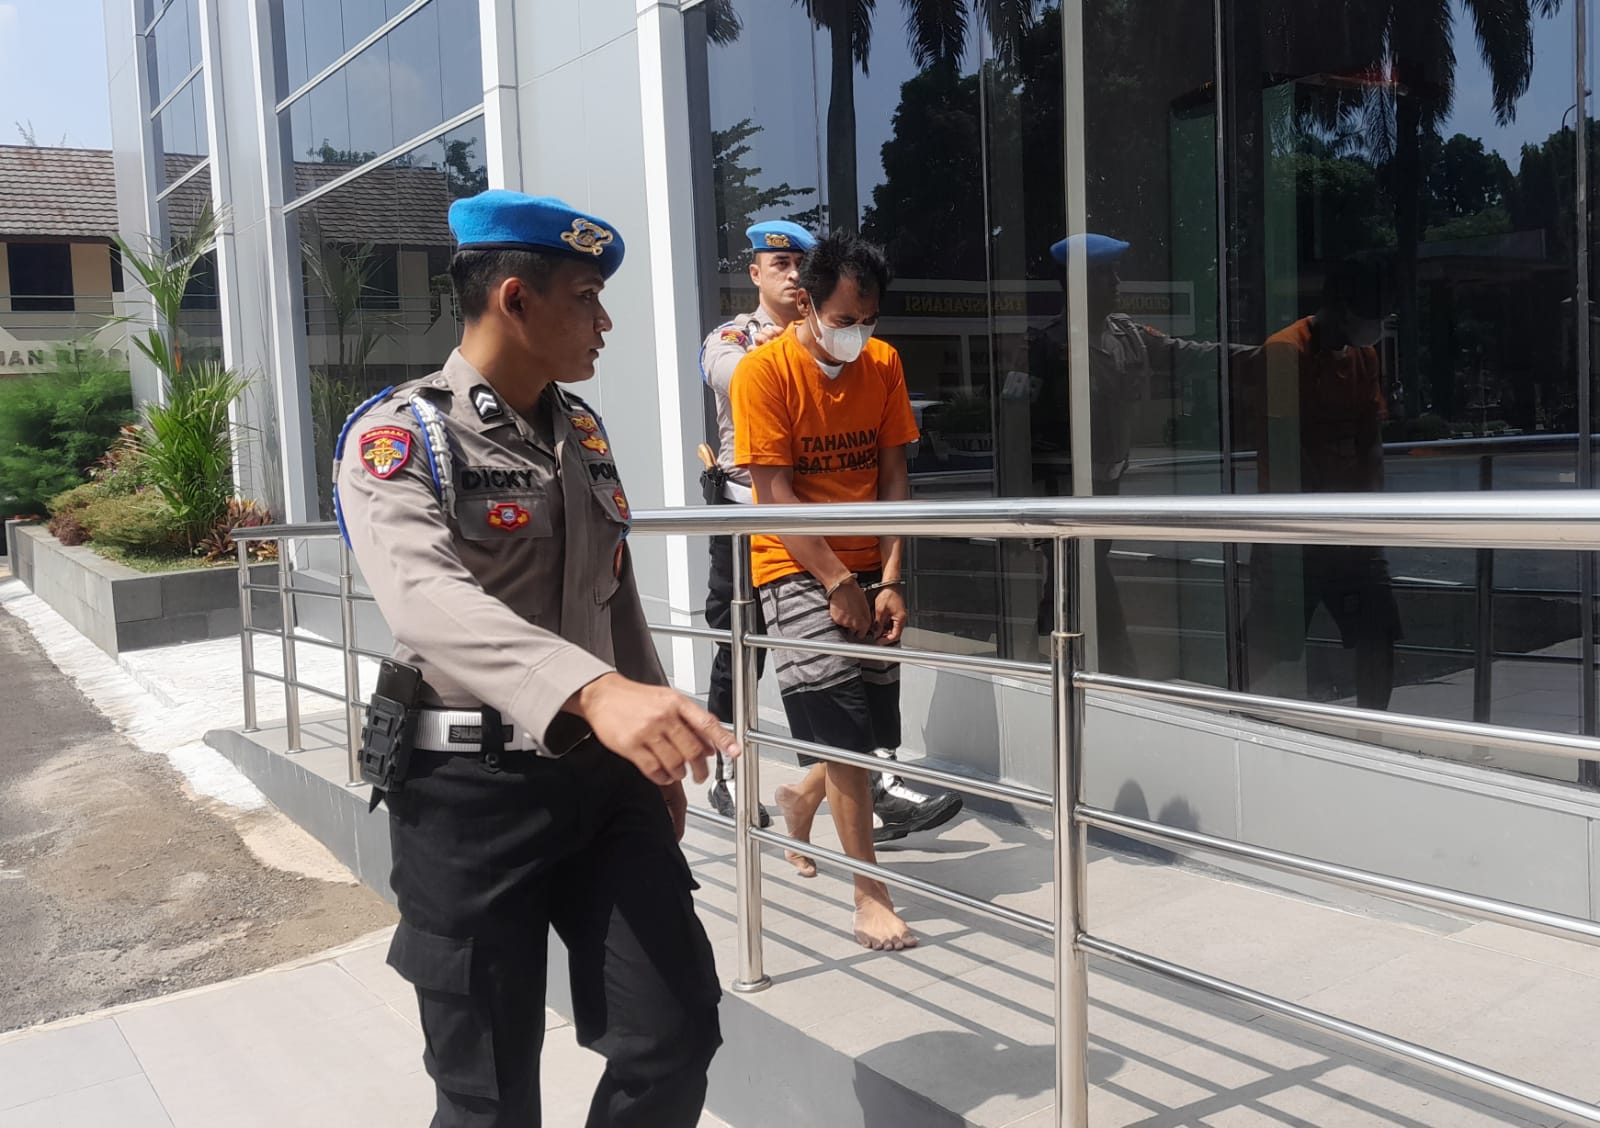 Mantan Kepsek di Bogor Ditemukan Gantung Diri, Polisi Masih Selidiki Motifnya / Sandika Fadilah